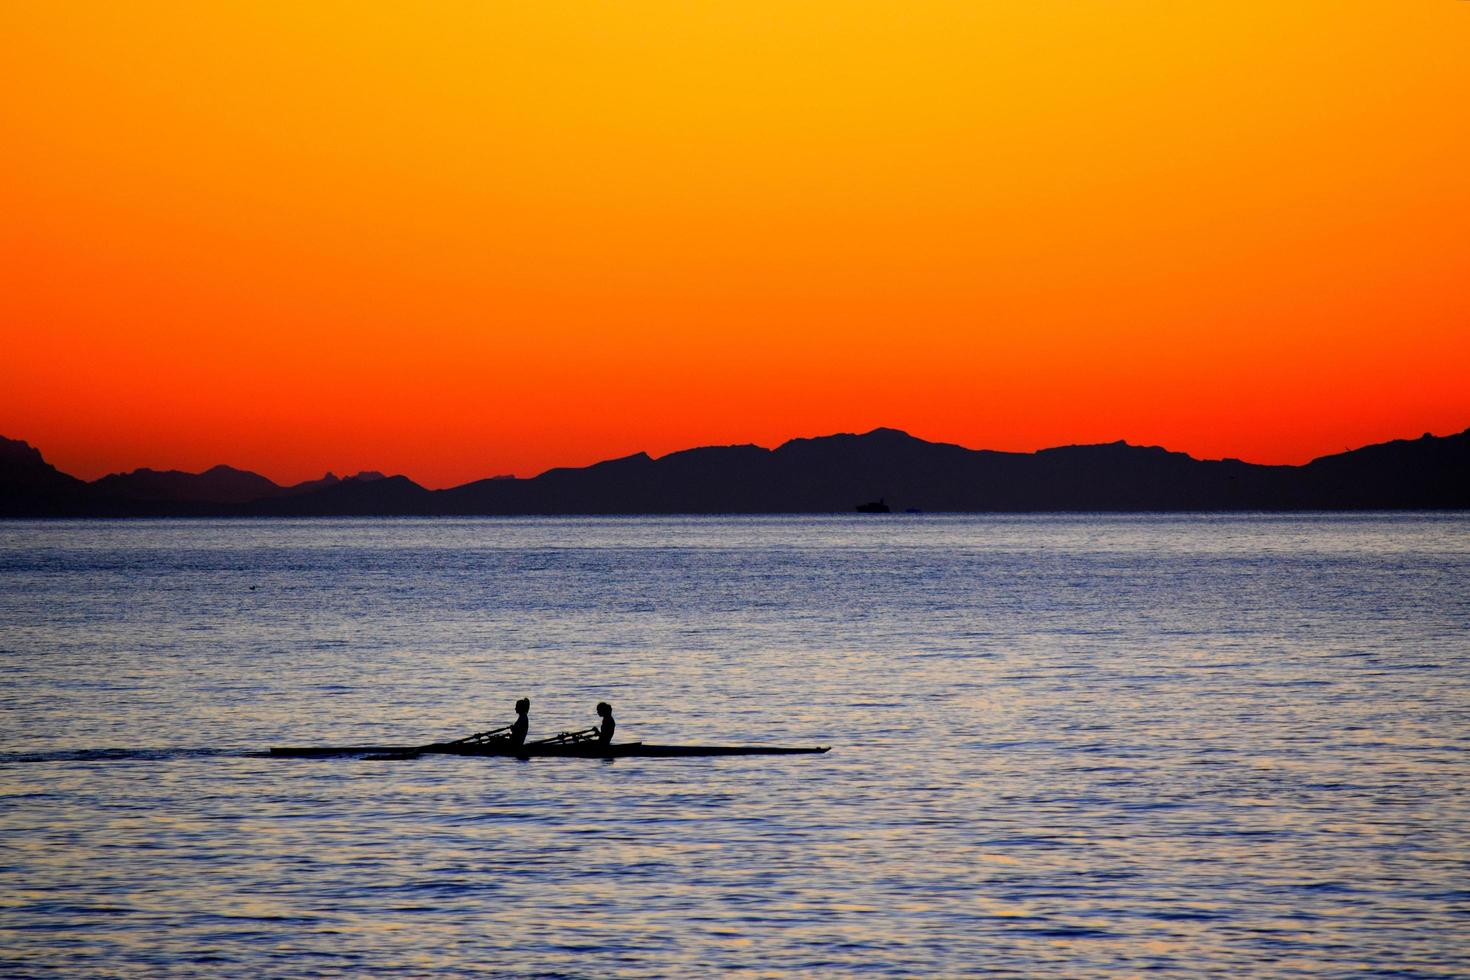 silueta de dos personas en botes de remos durante la puesta de sol foto